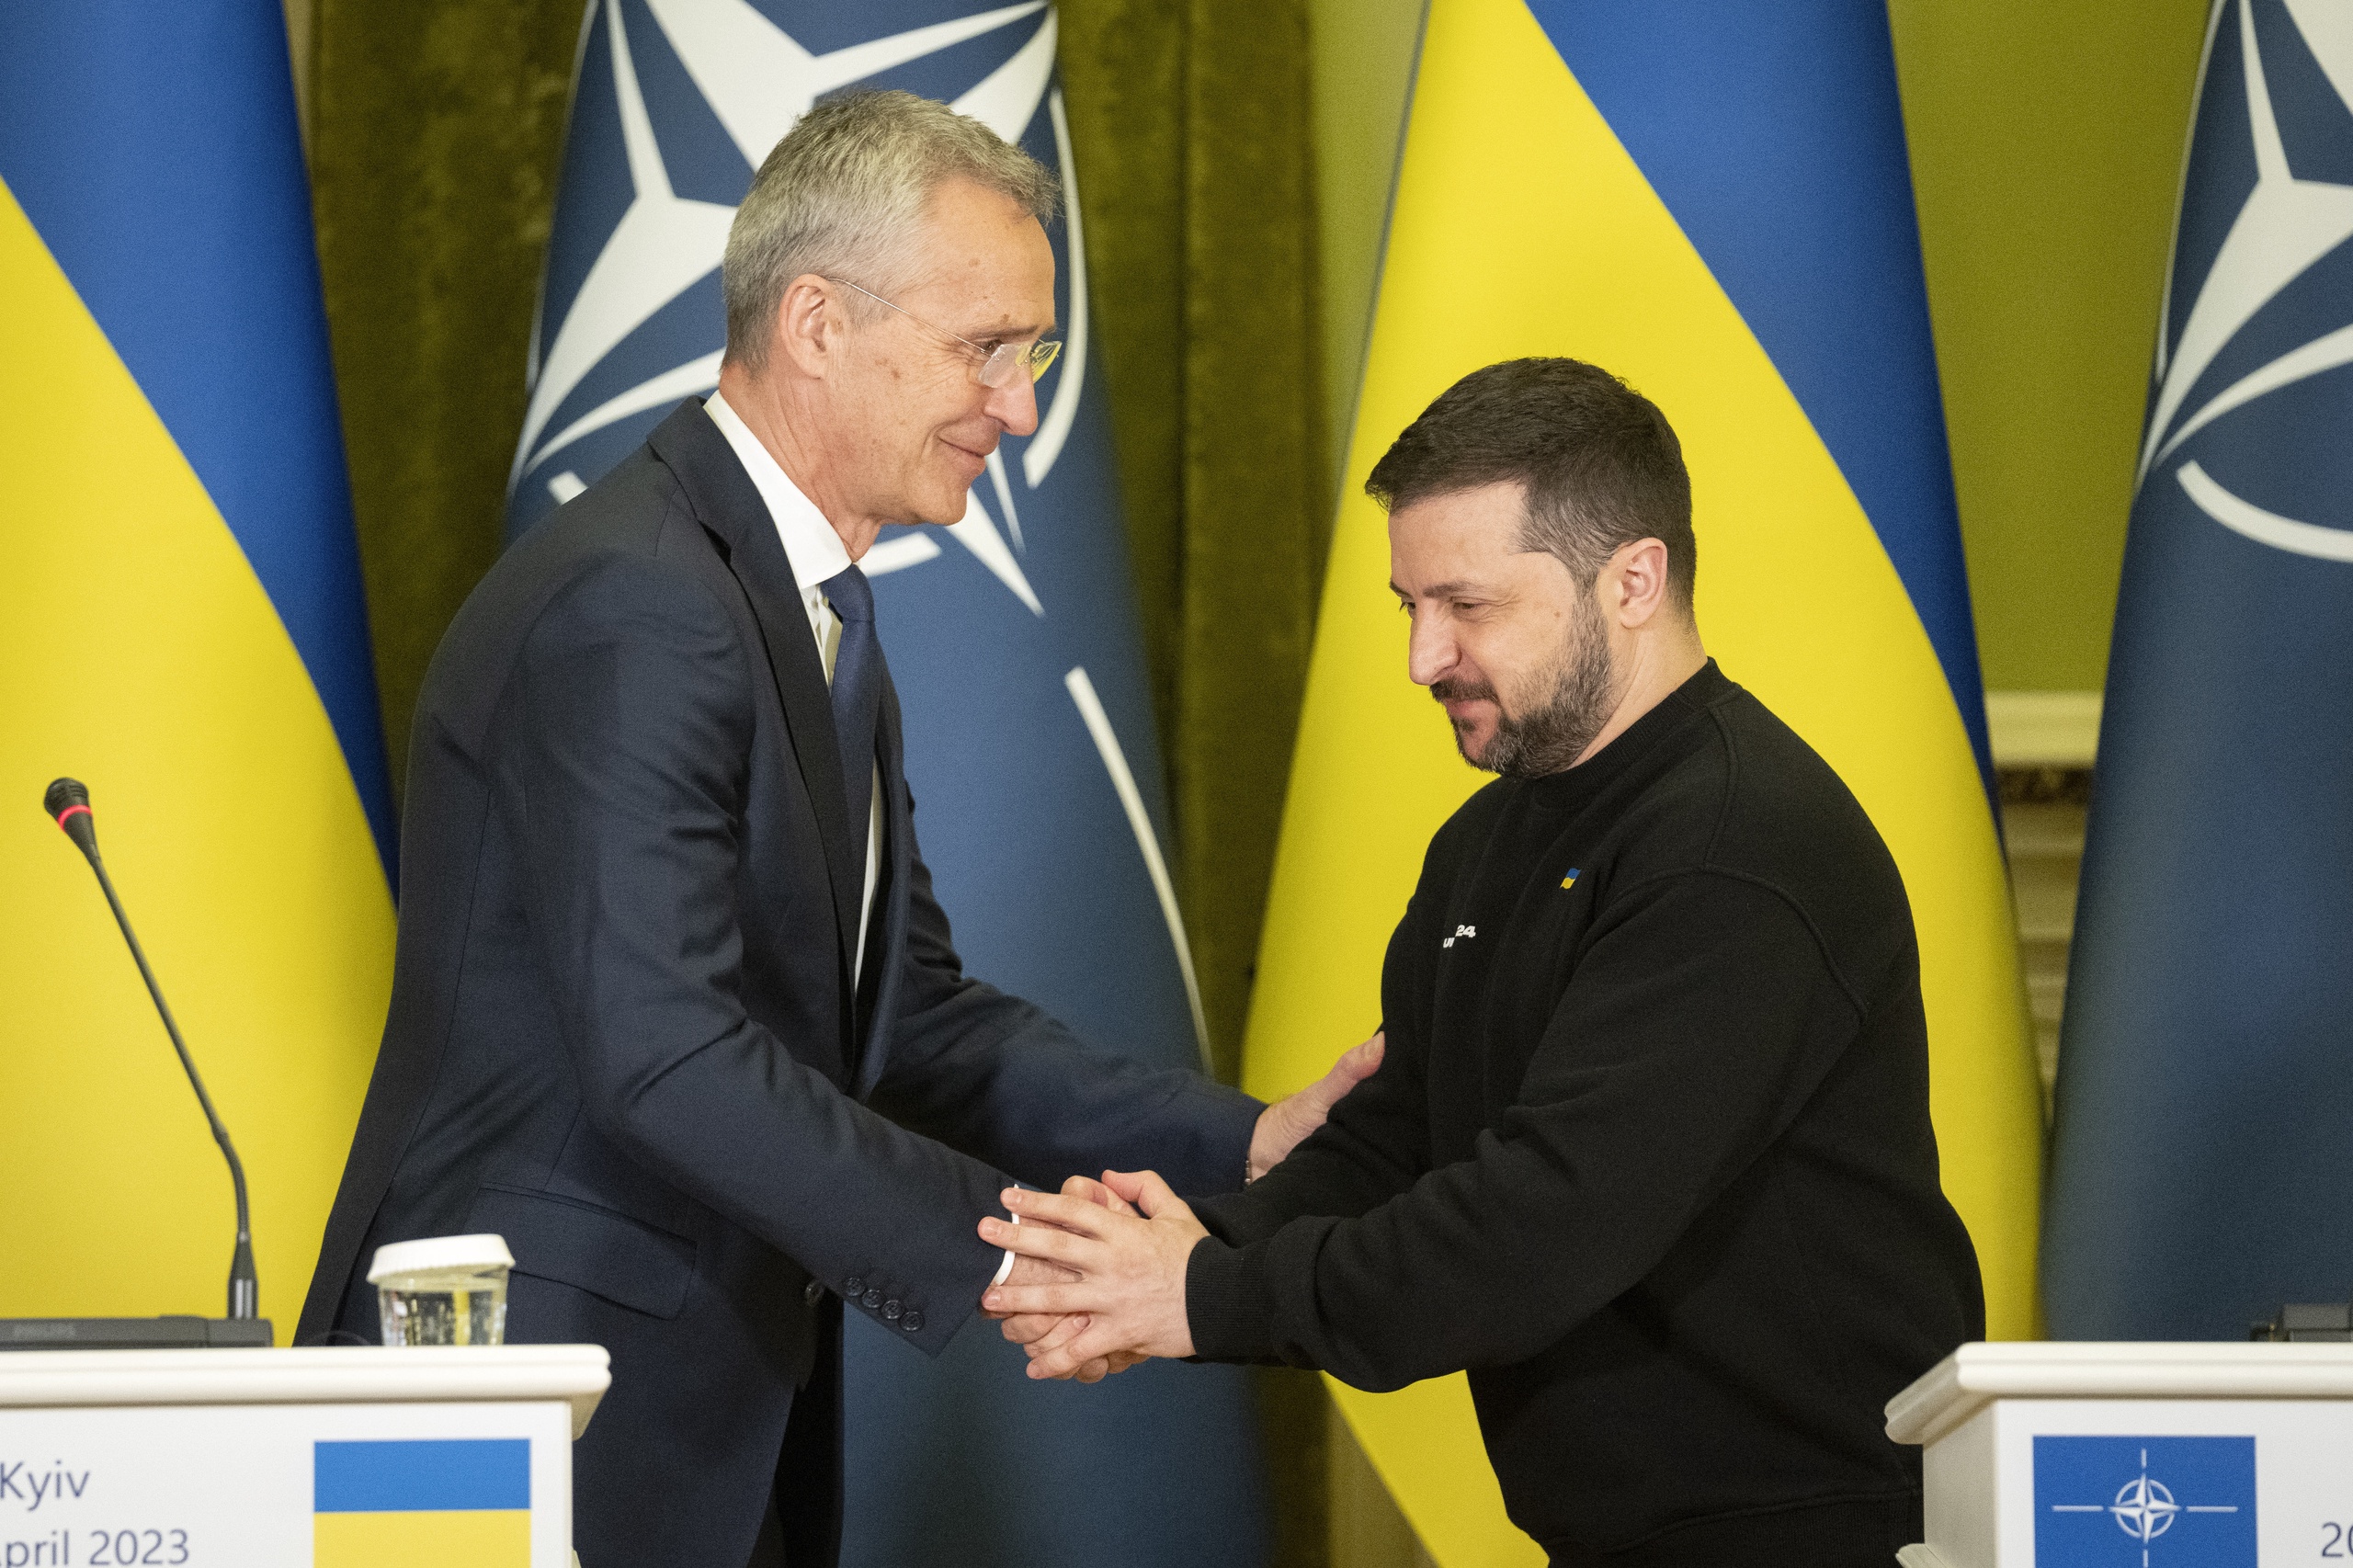 Oekraïne hoort een plek te krijgen in de NAVO, zegt secretaris-generaal van de NAVO Jens Stoltenberg tijdens zijn bezoek aan Kiev. Tijdens de top van de westerse alliantie aanstaande juli in het Litouwse Vilnius zal een mogelijk lidmaatschap 'hoog op de agenda staan', stelde Stoltenberg ook. 